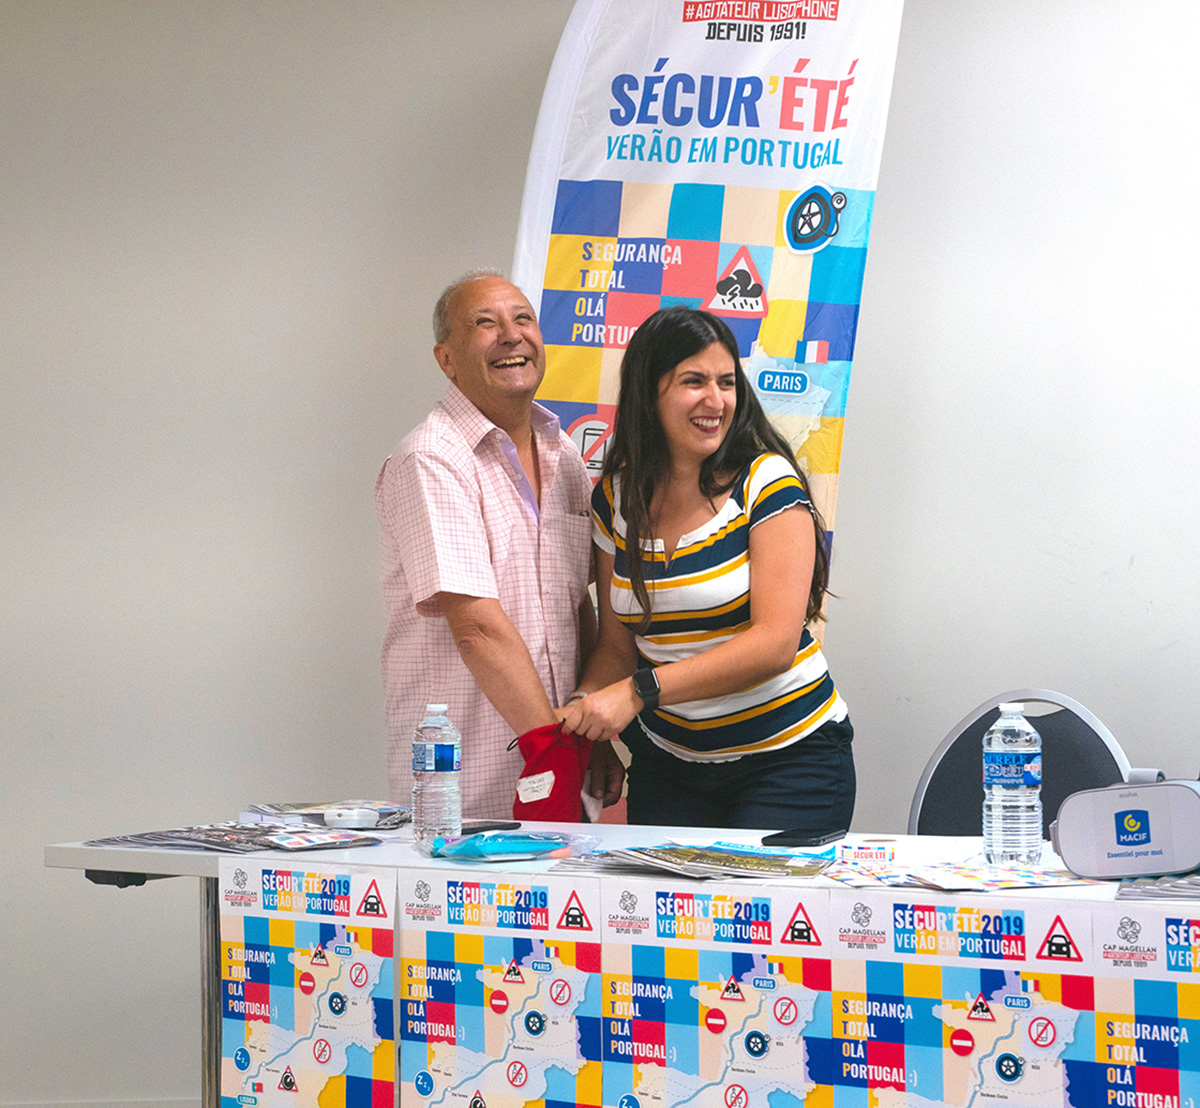 Lancement de la campagne Sécur'été 2019 - Verão em Portugal à l'Aérokart d'Argenteuil